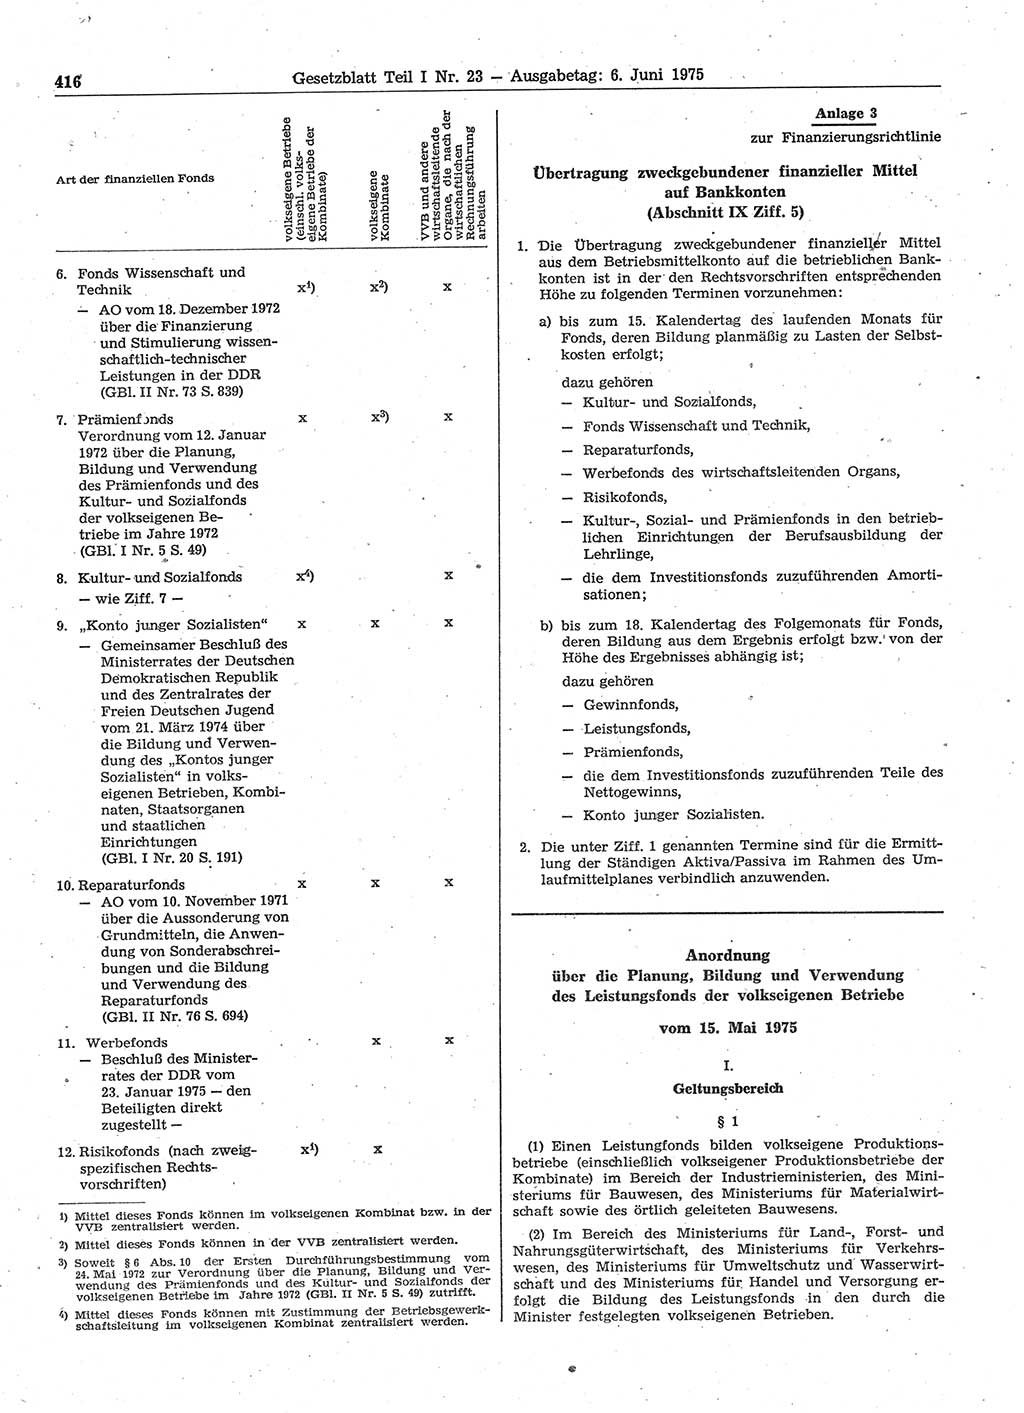 Gesetzblatt (GBl.) der Deutschen Demokratischen Republik (DDR) Teil Ⅰ 1975, Seite 416 (GBl. DDR Ⅰ 1975, S. 416)